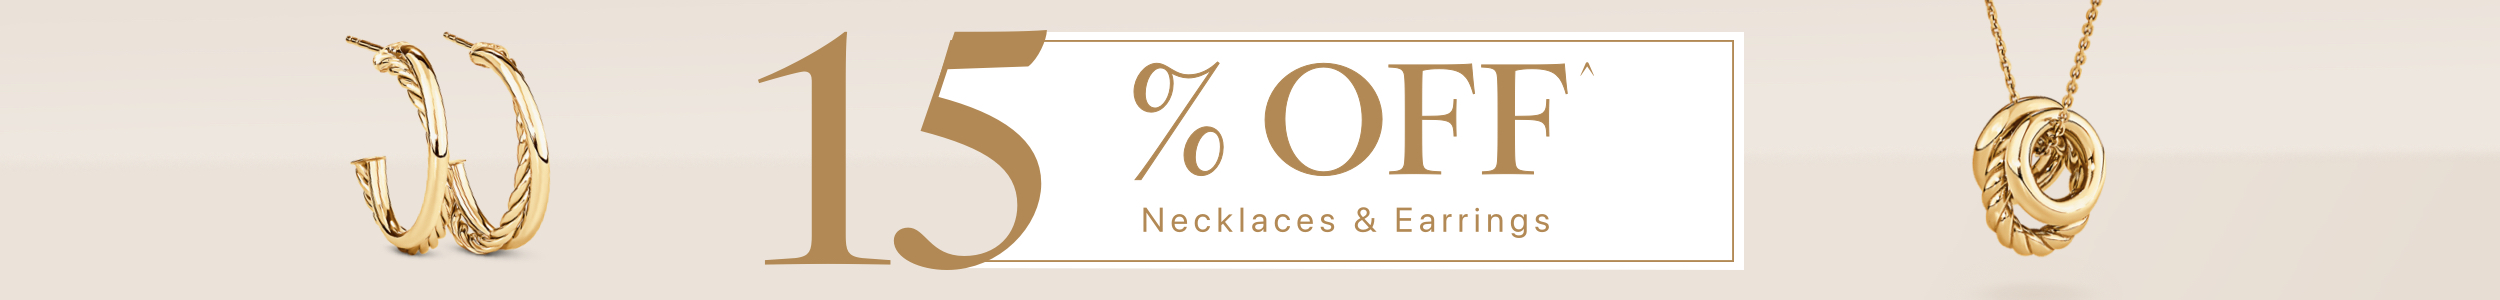 15% off neckalces & earrings